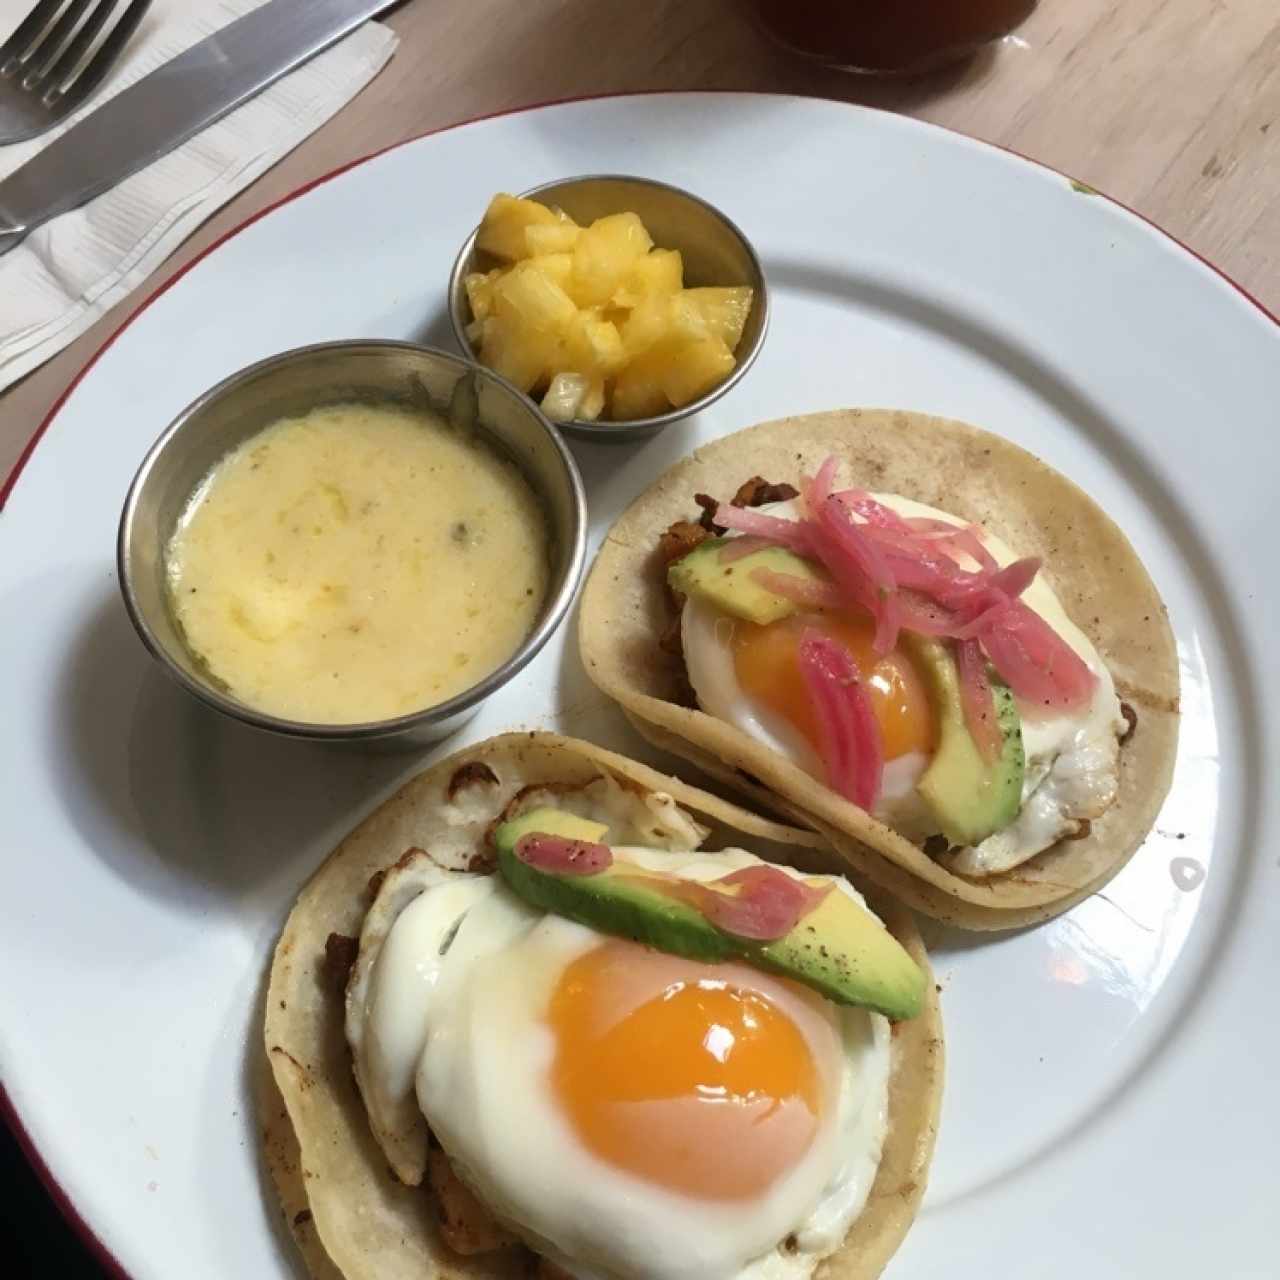 Desayuno Tacos al pastor con huevo